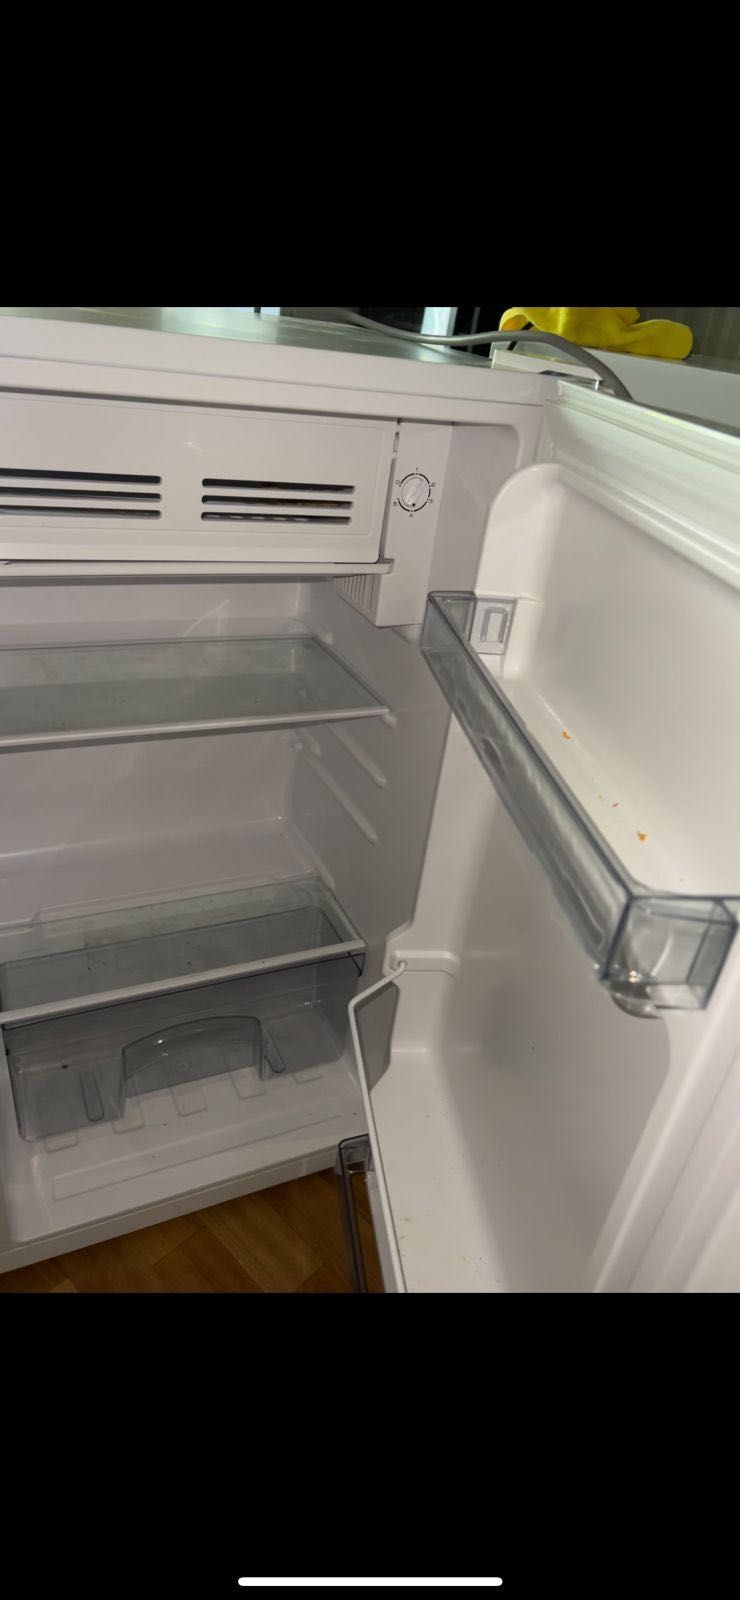 Белый холодильник